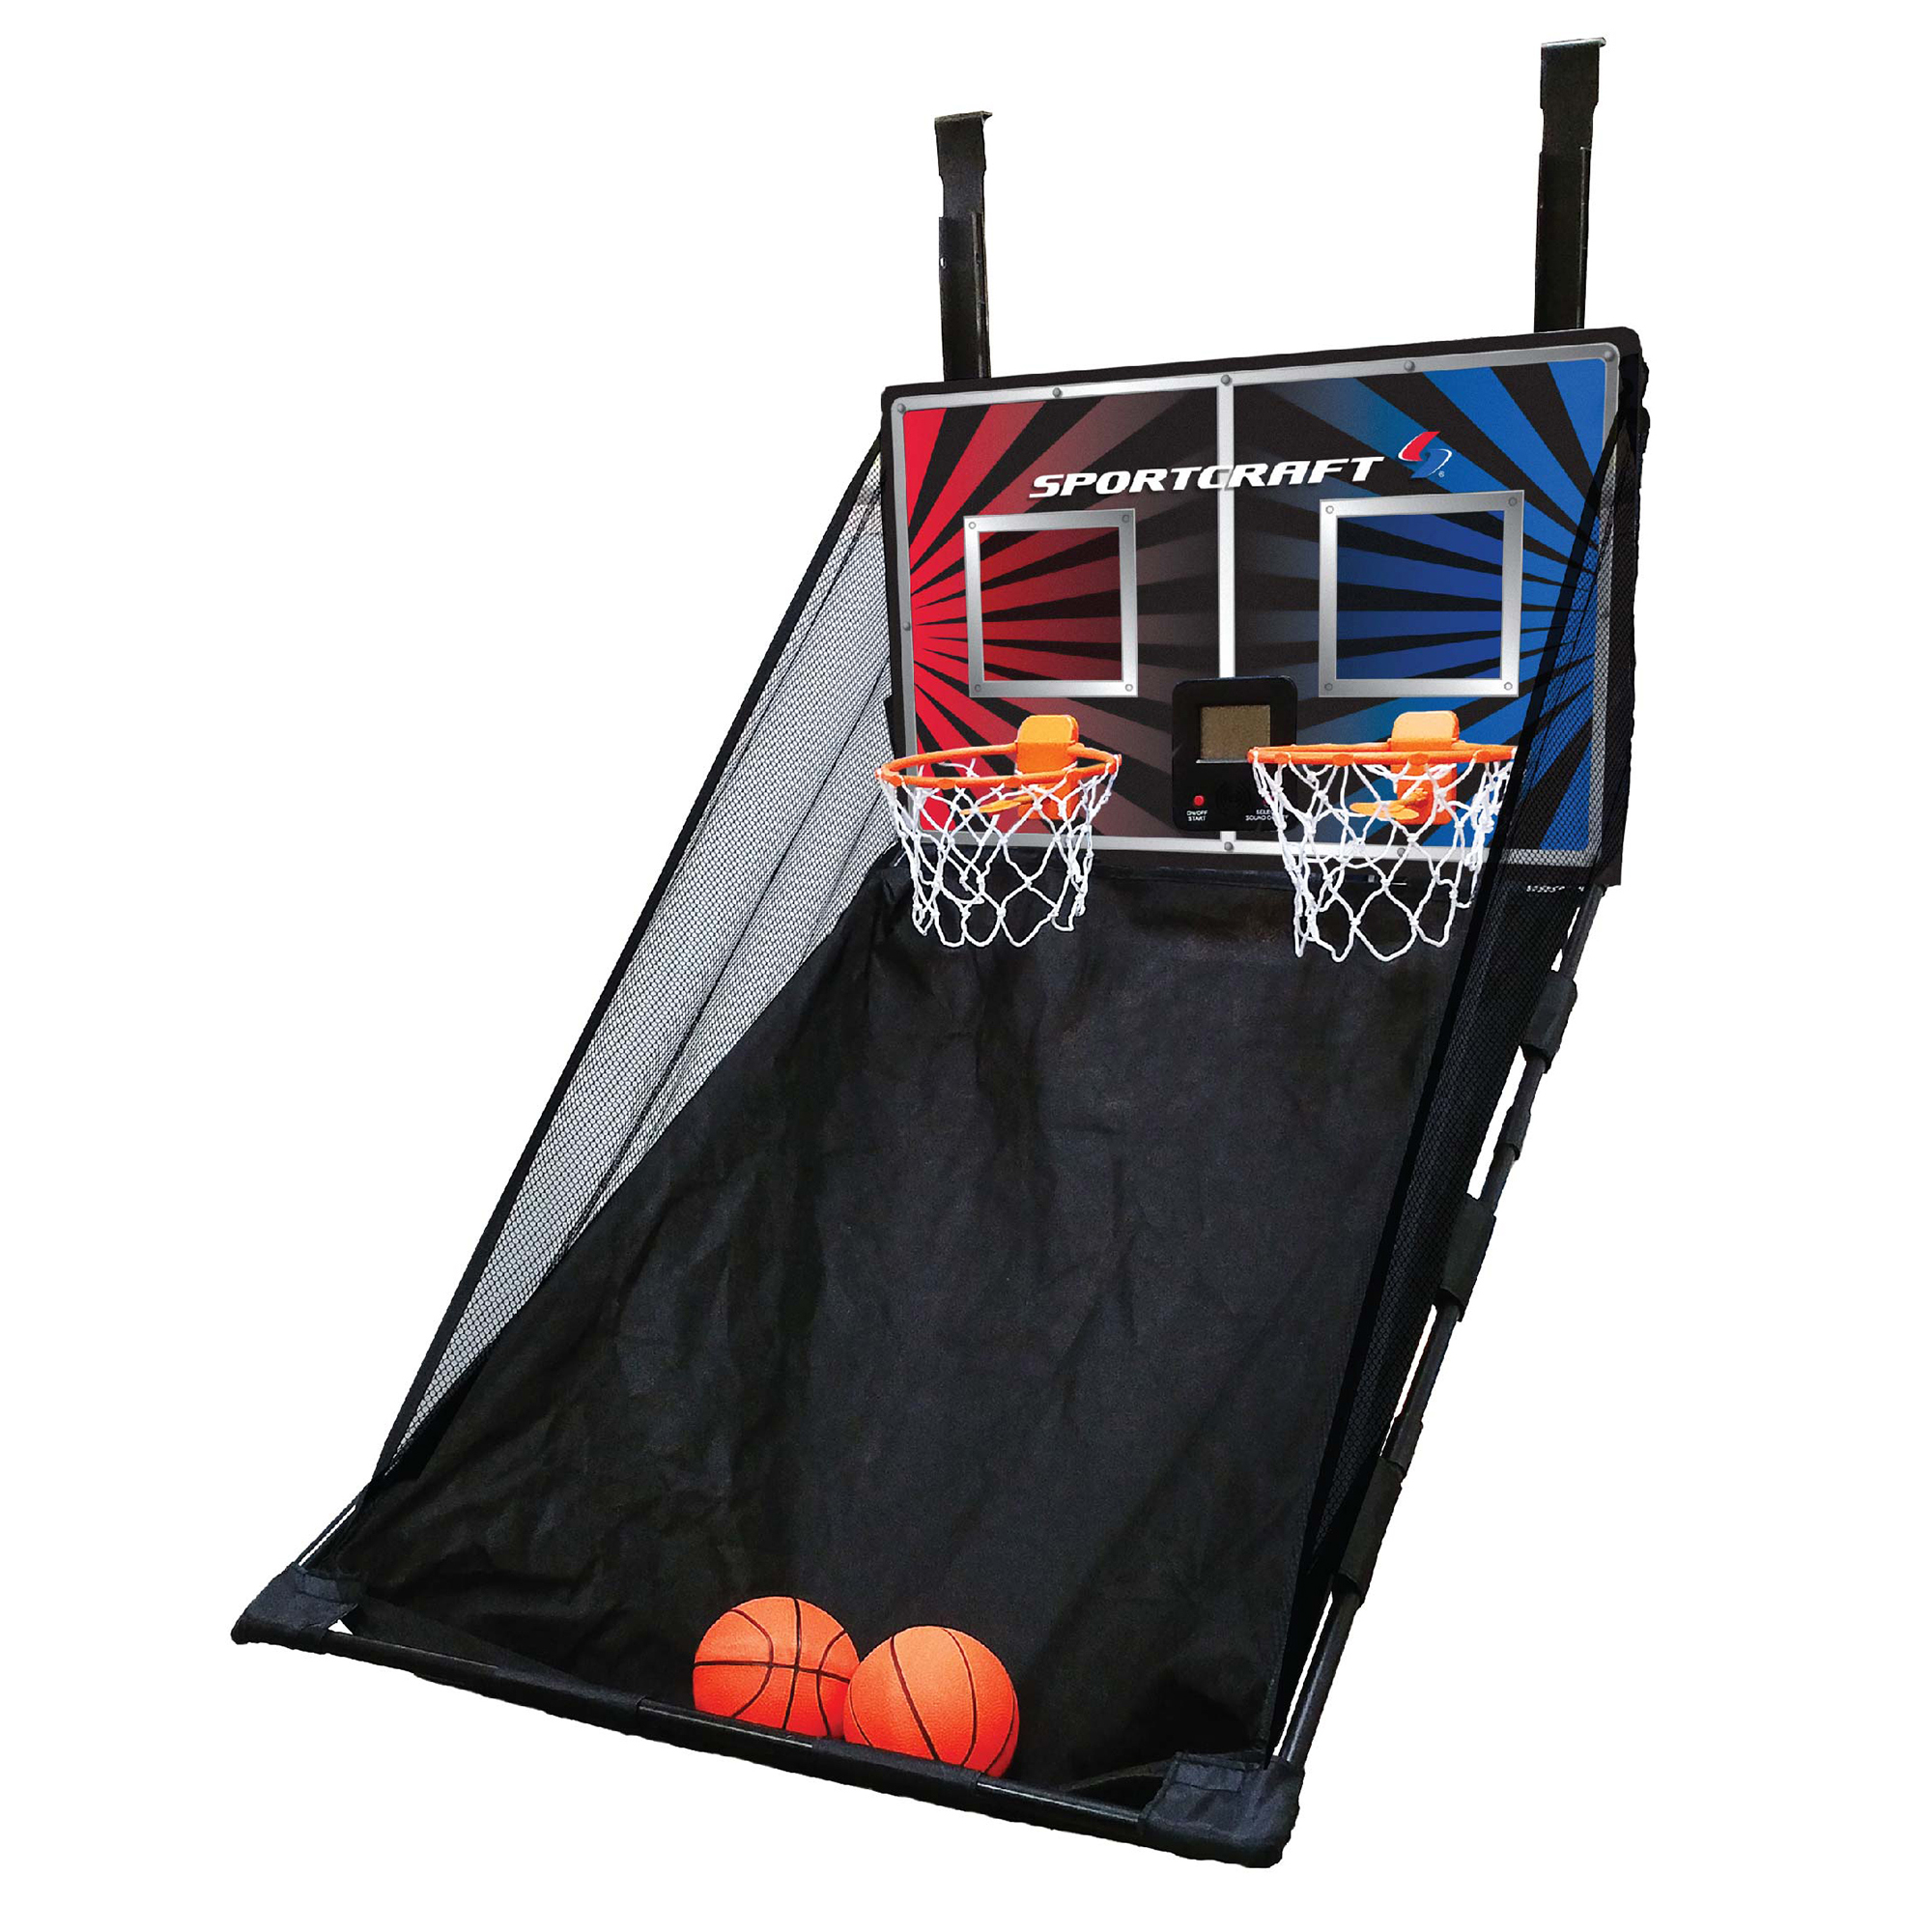 sportcraft double shot electronic basketball arcade game